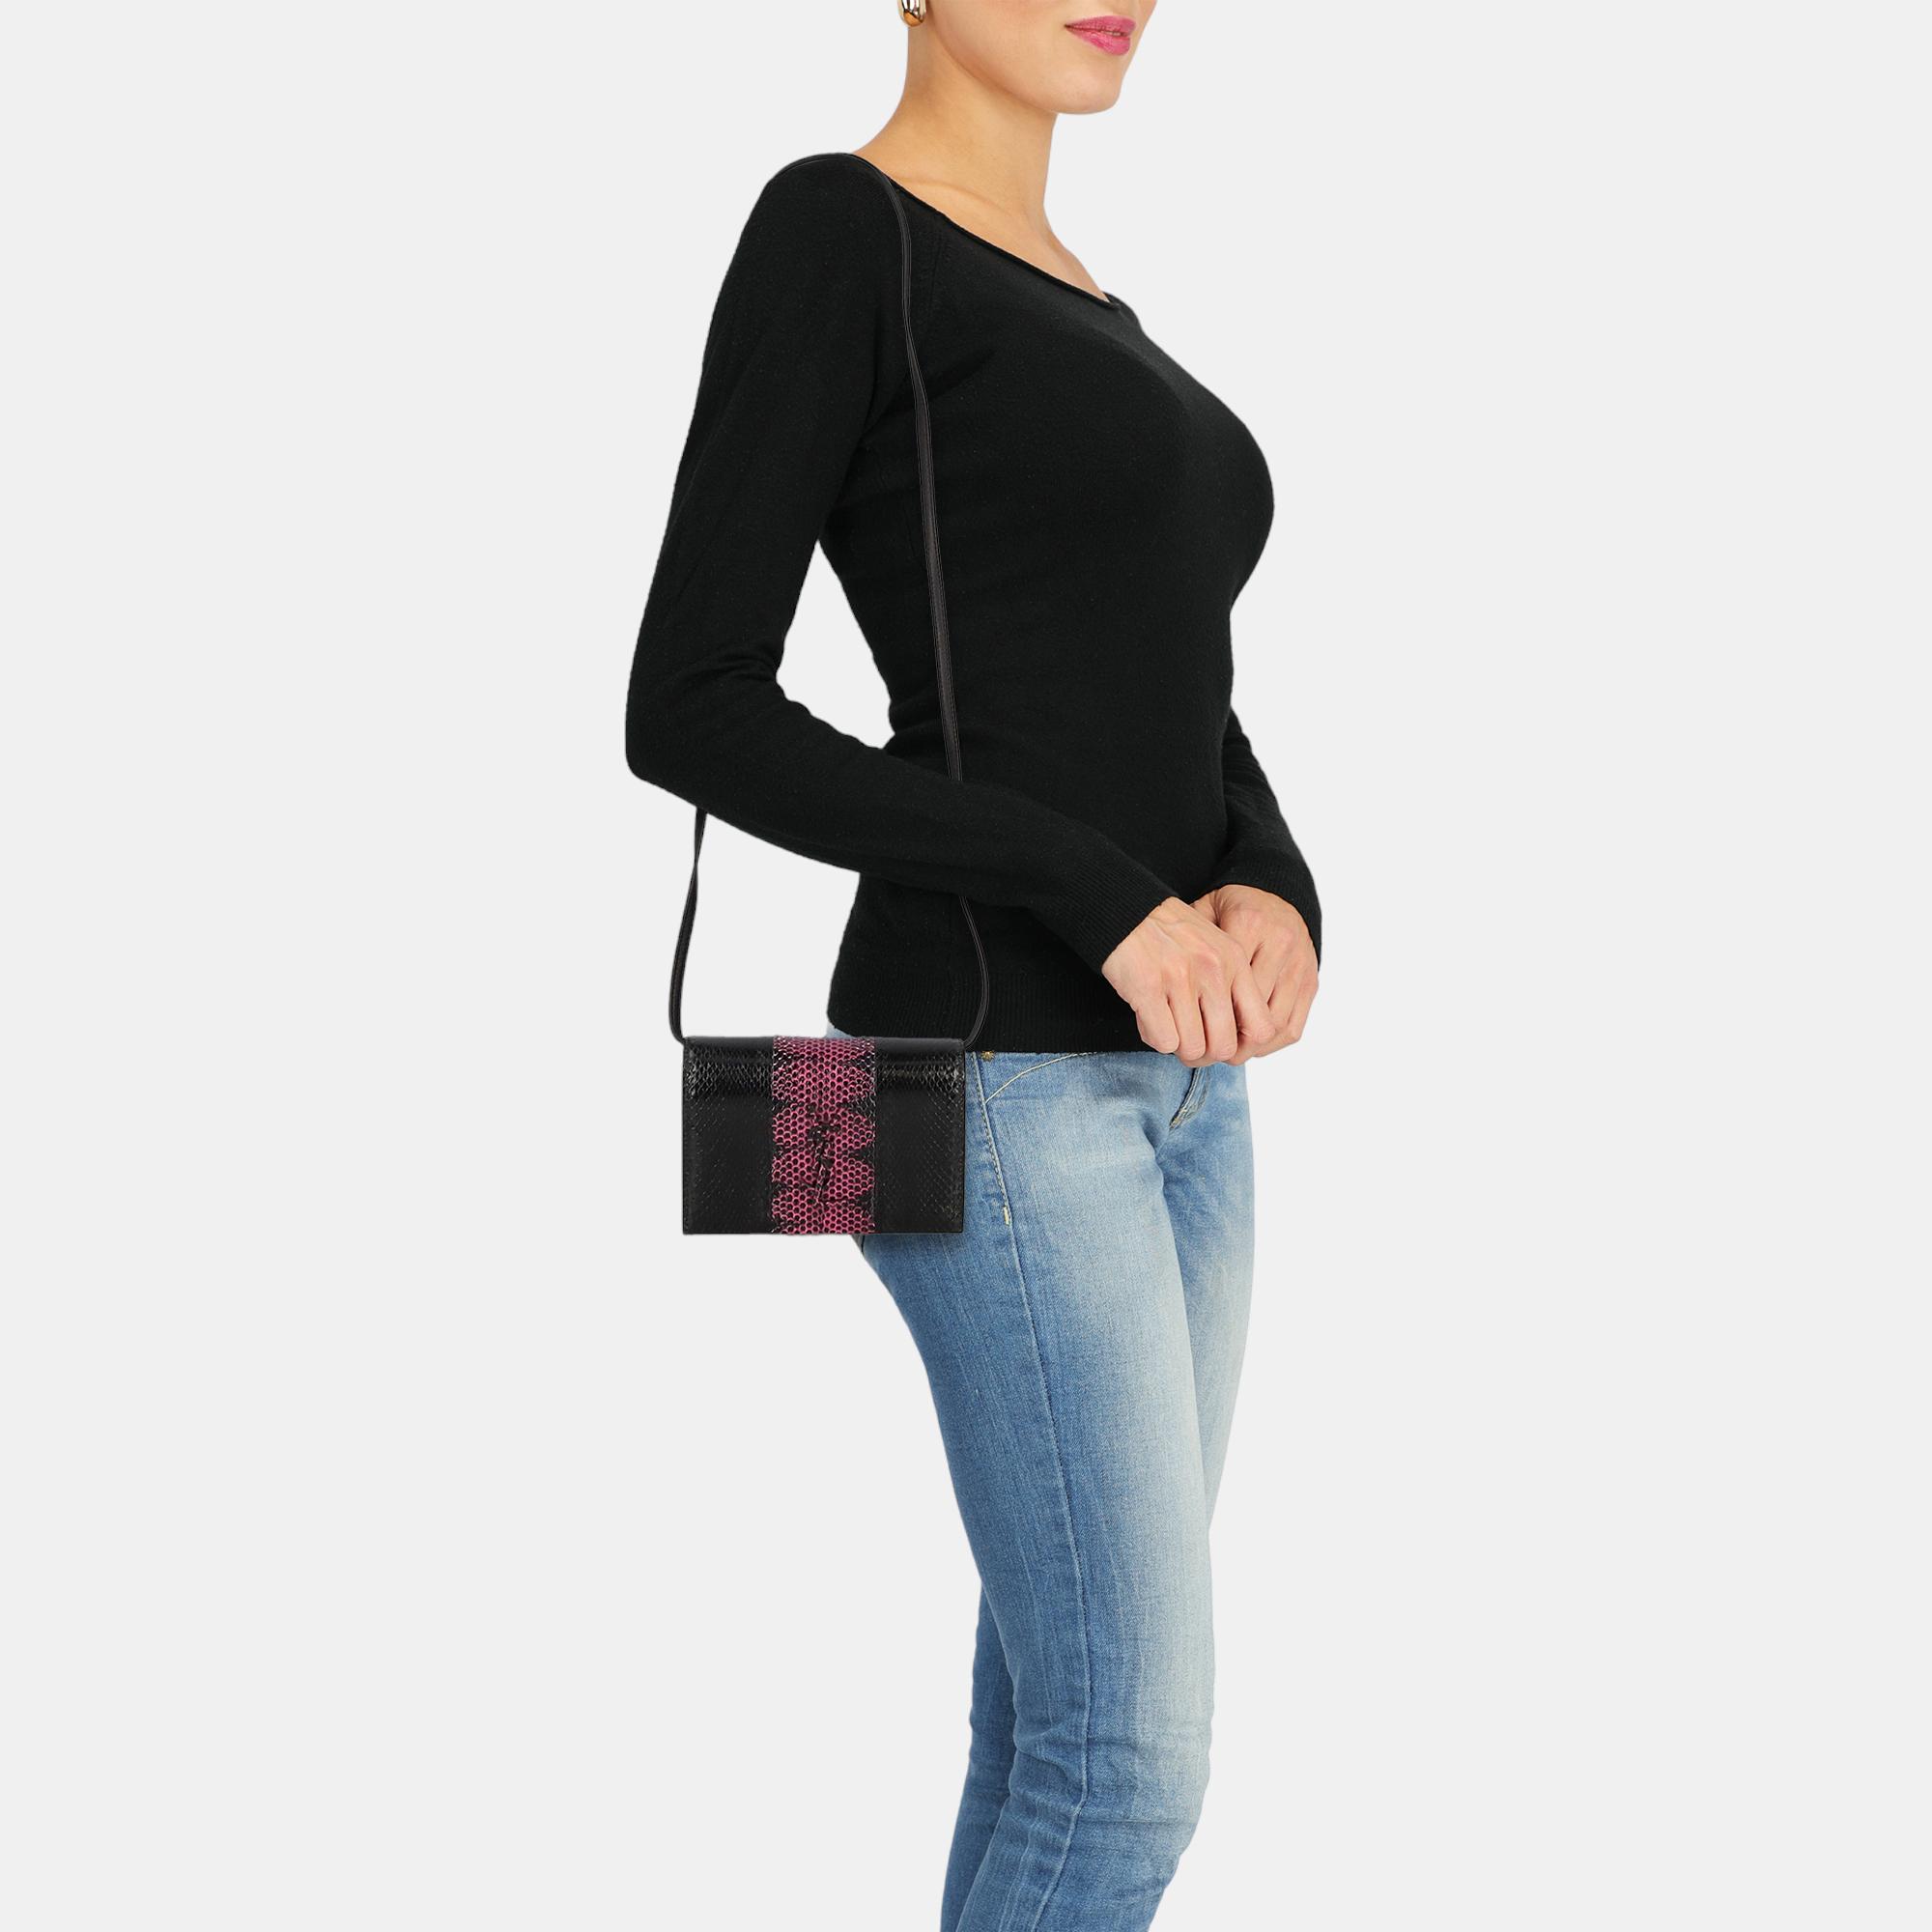 Saint Laurent  Women's Leather Shoulder Bag - Black - One Size